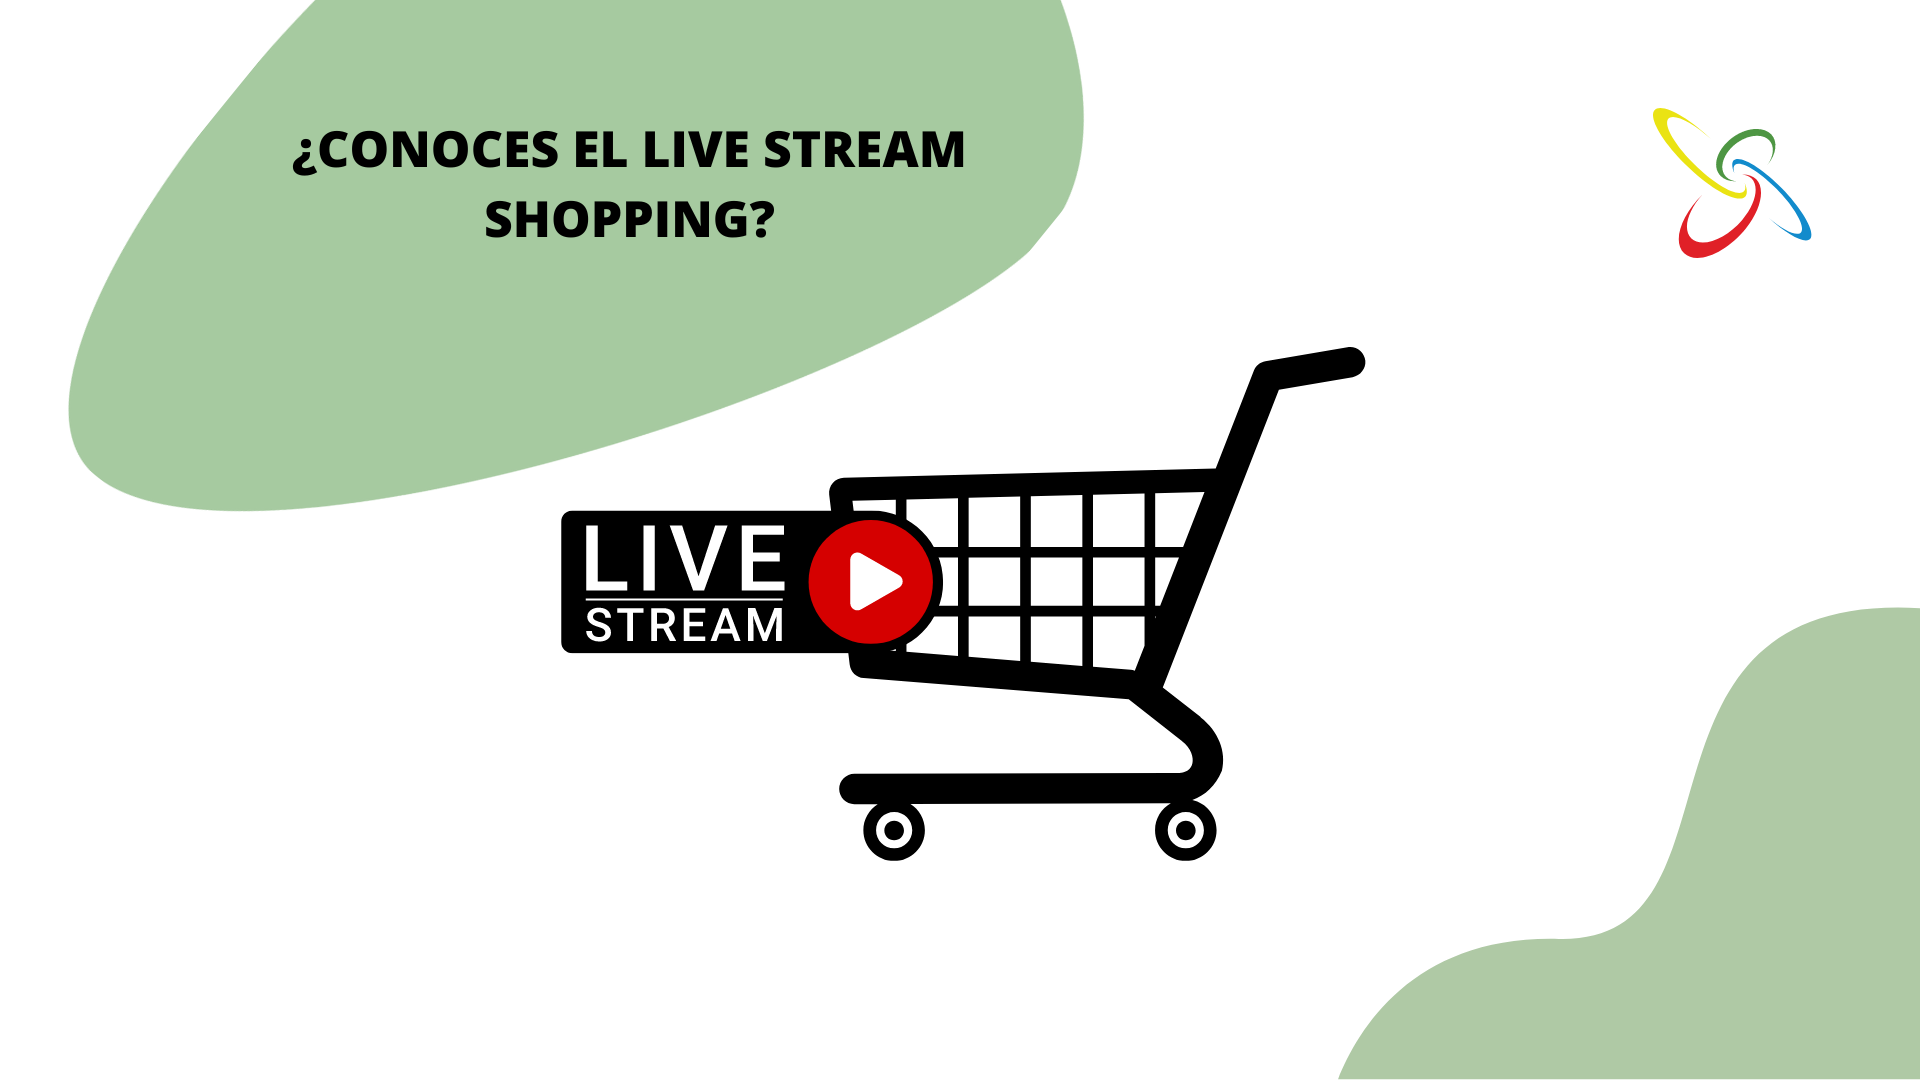 ¿Conoces el live stream shopping?